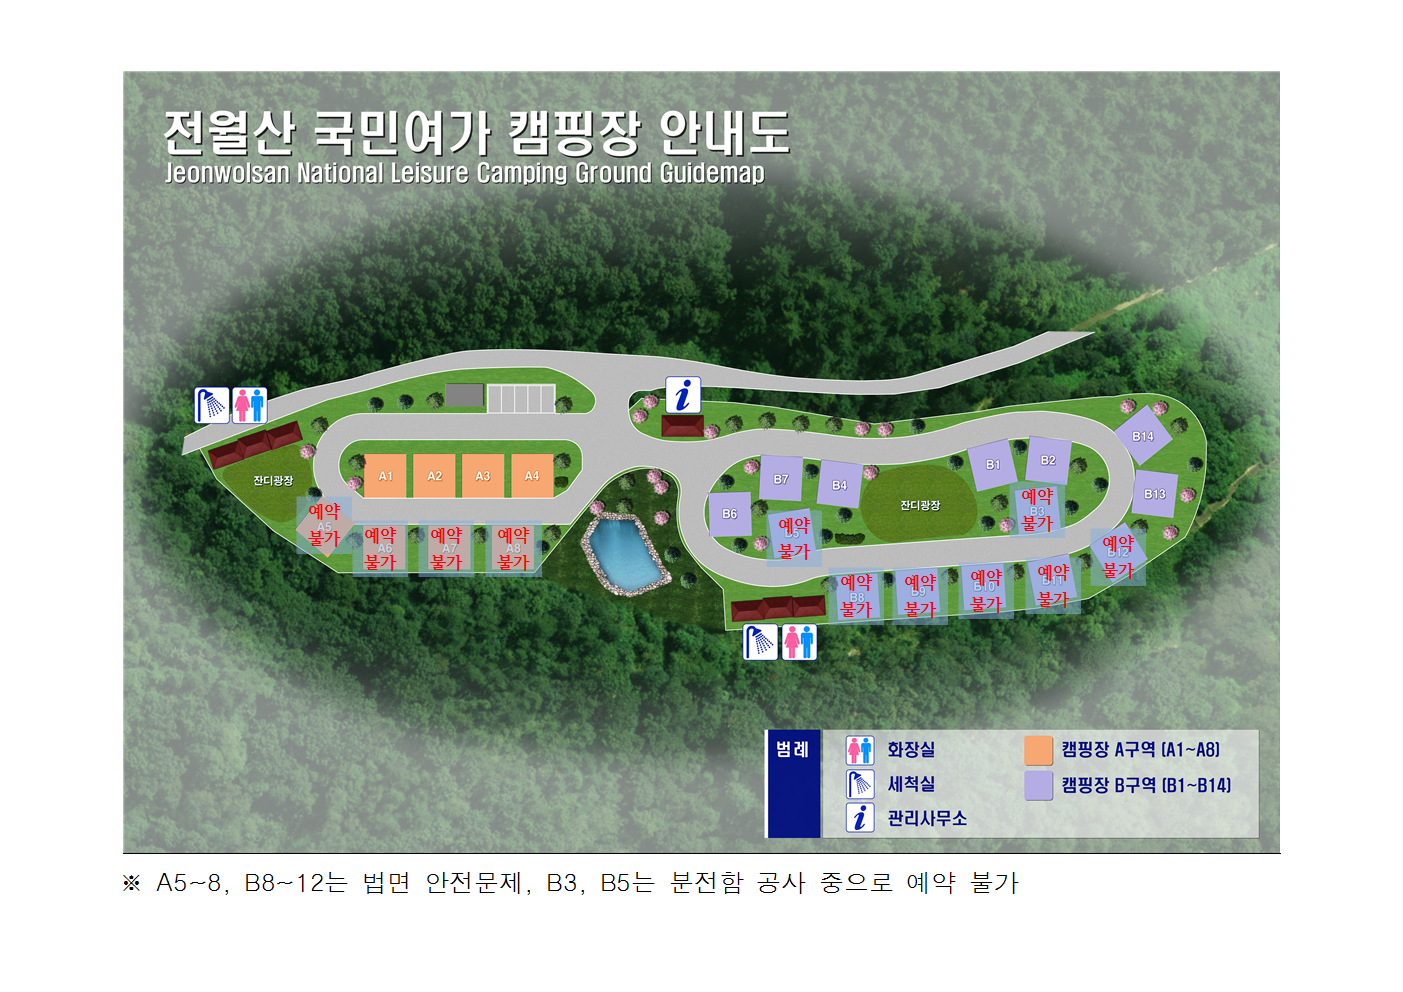 전월산 국민여가 캠핑장 안내도 Jeonwolsan National Leisure Camping Ground Guidemap 범례 화장실 세척실 관리사무소 캠핑장 A구역(A1~A8) 캠핑장 B구역(B1~B14)※A5~8, B8~12는 법면 안전문제, B3, B5는 분전함 공사 중으로 예약 불가